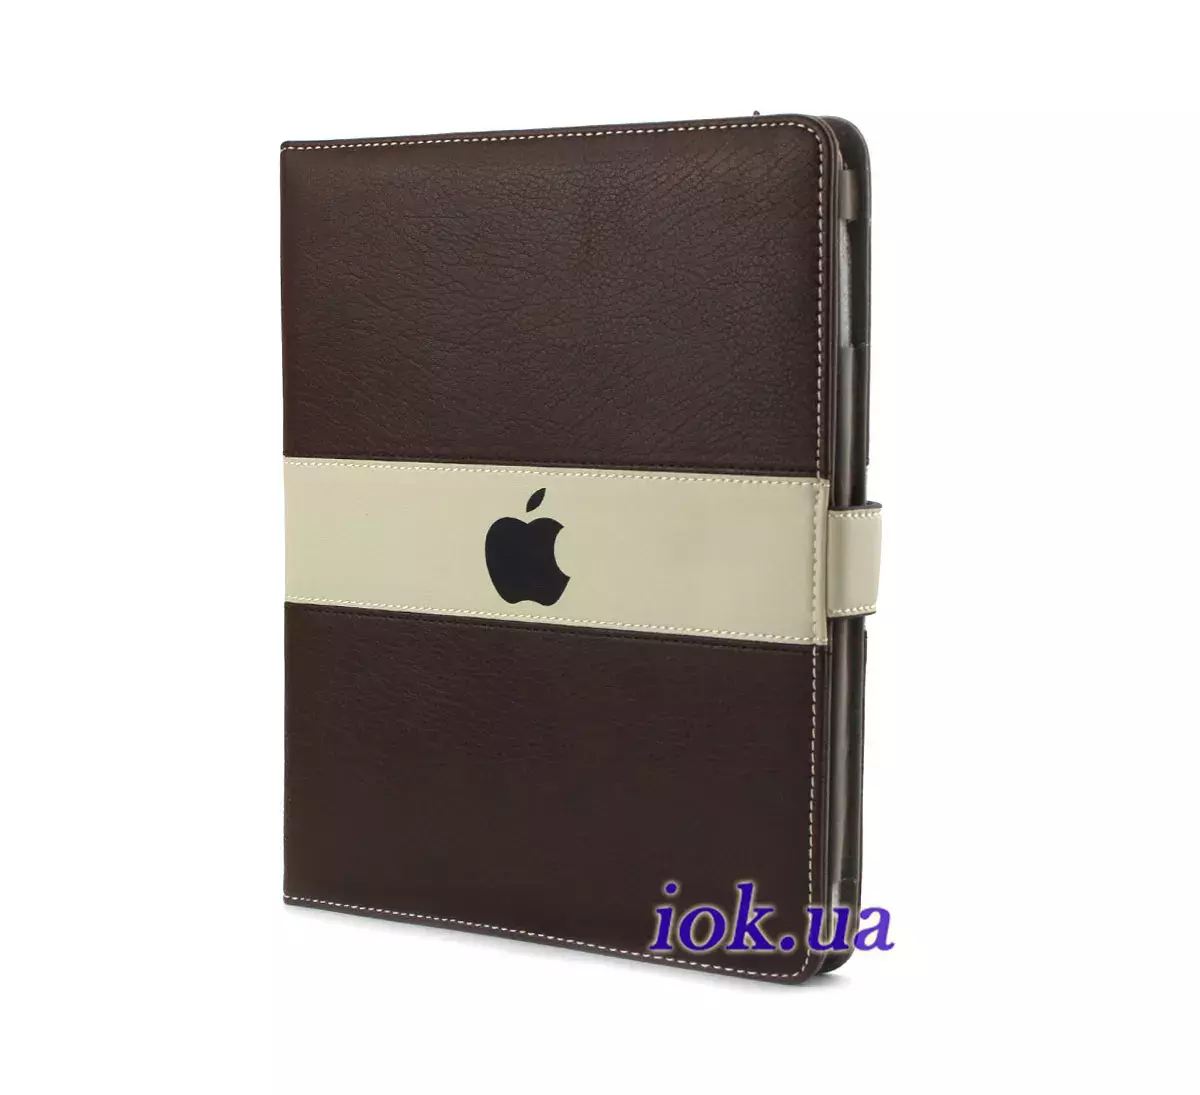 Чехол с яблочком Apple для iPad 2/3/4, коричневый